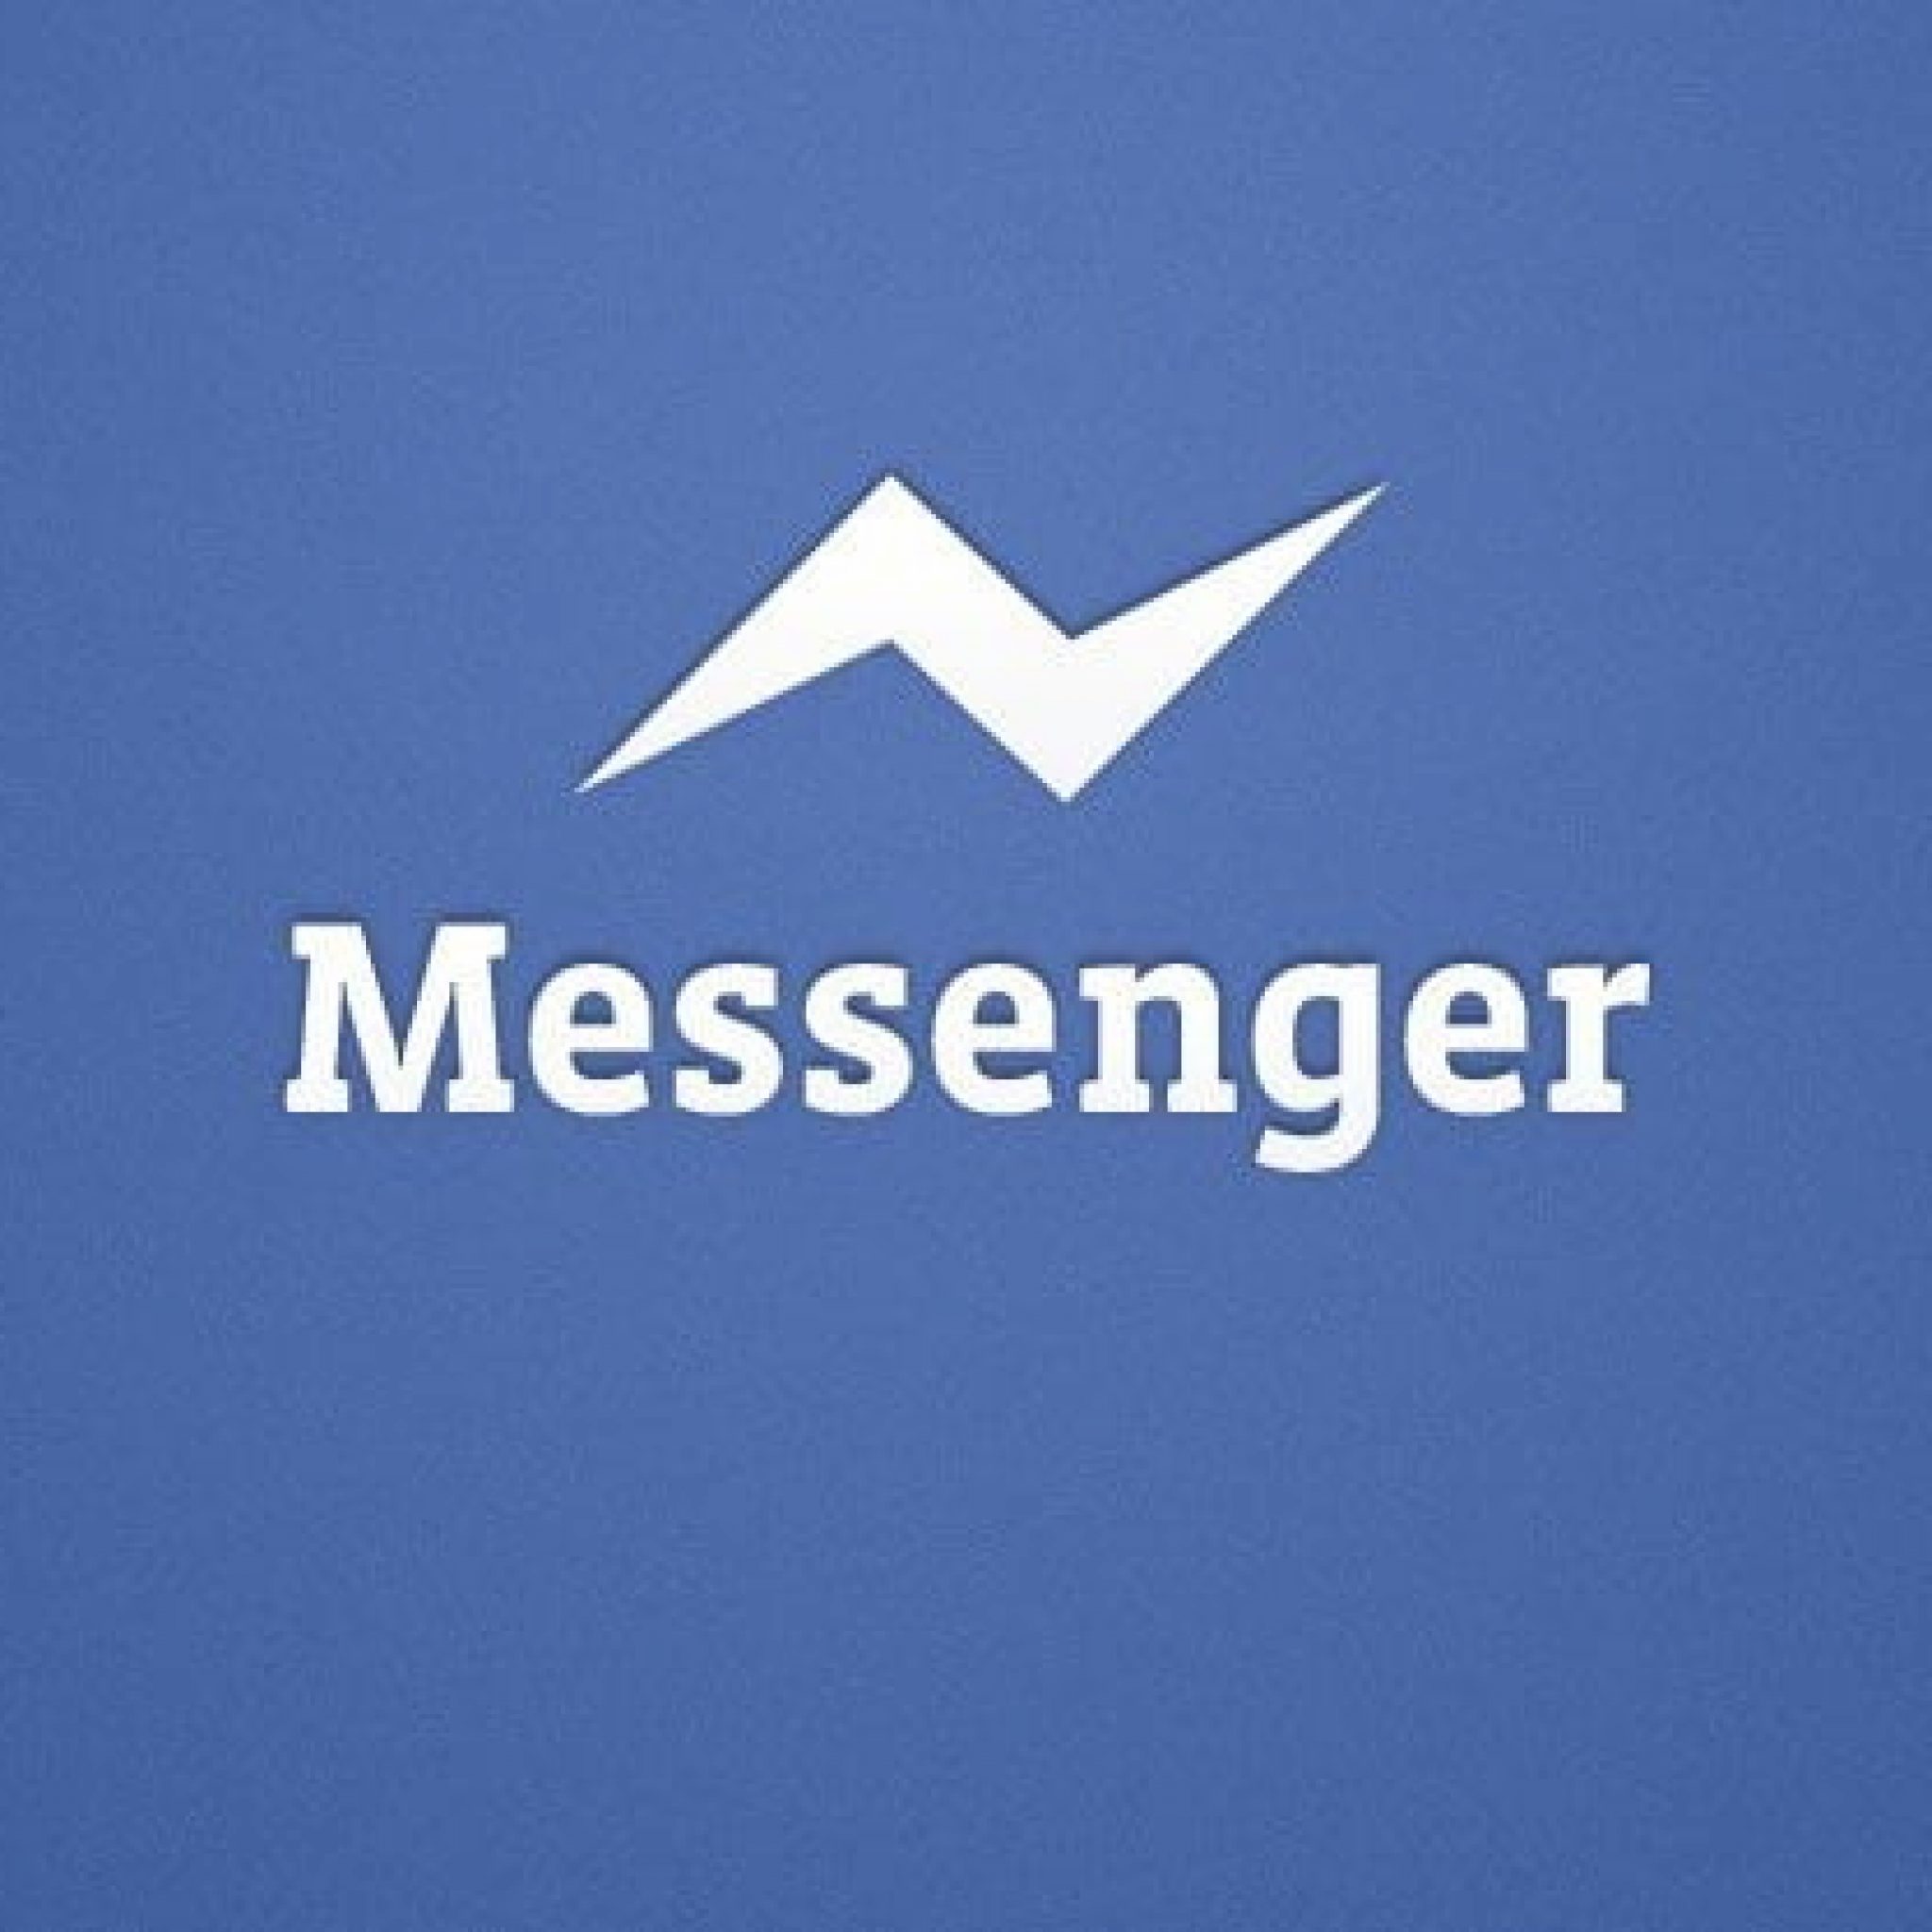 Messenger De Facebook Con Videollamadas Grupales